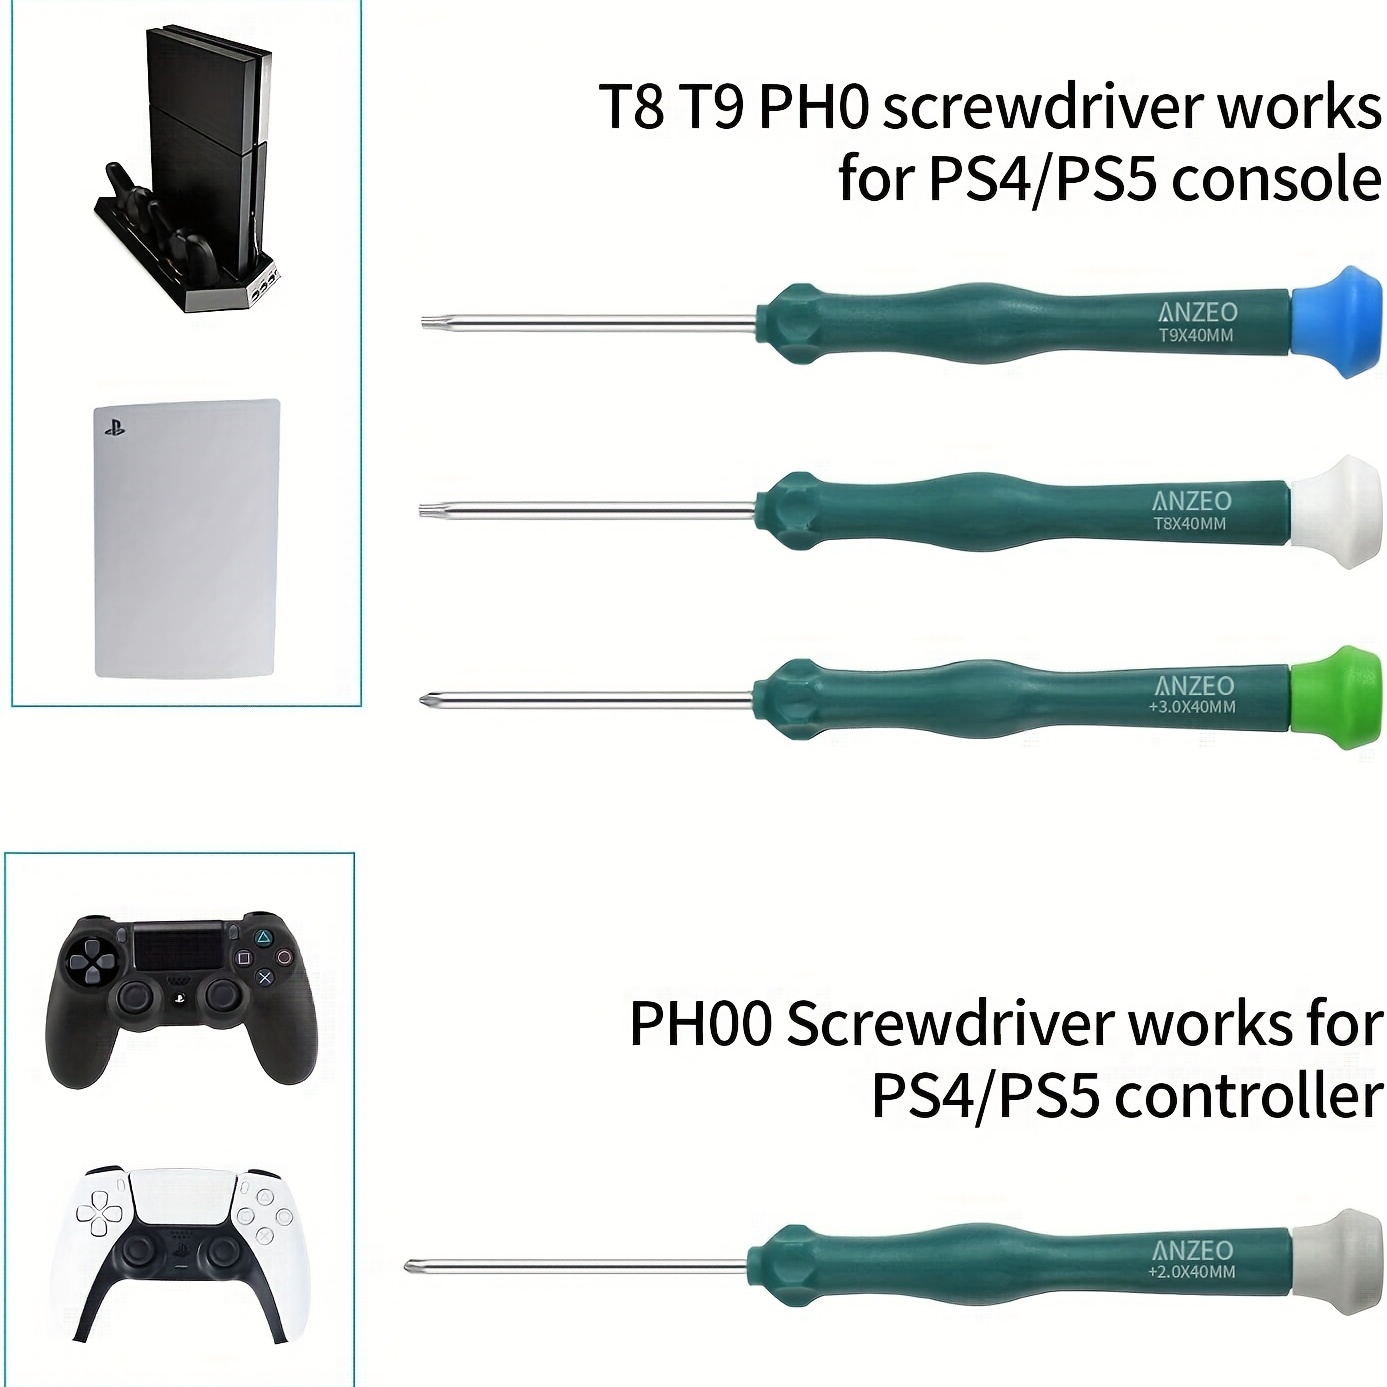 Kit D'outils De Réparation De Nettoyage Pour PS4 PS5 Jeu De - Temu